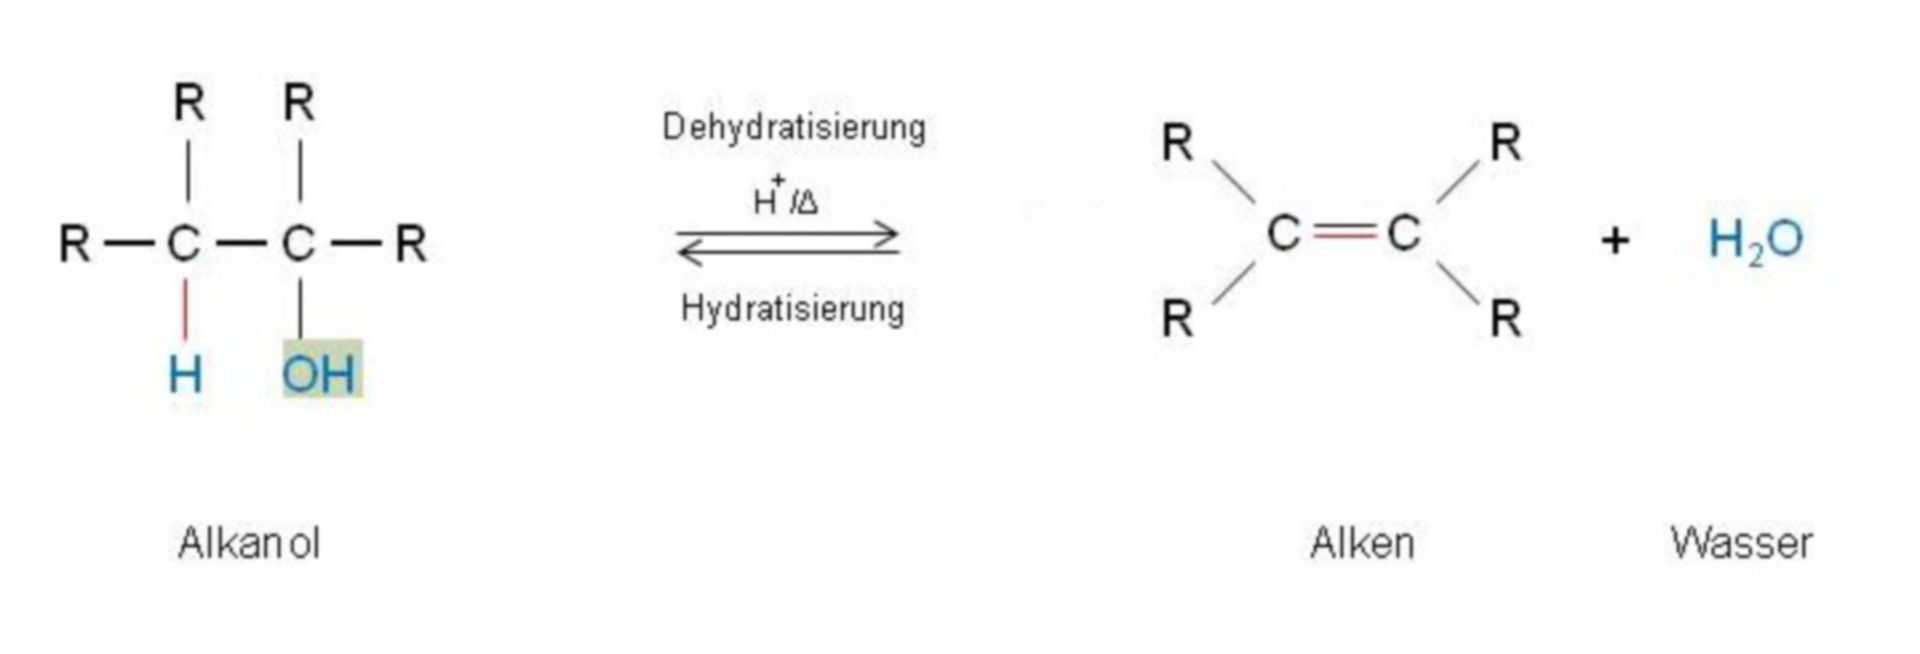 Dehydratisierung + Hydratisierung